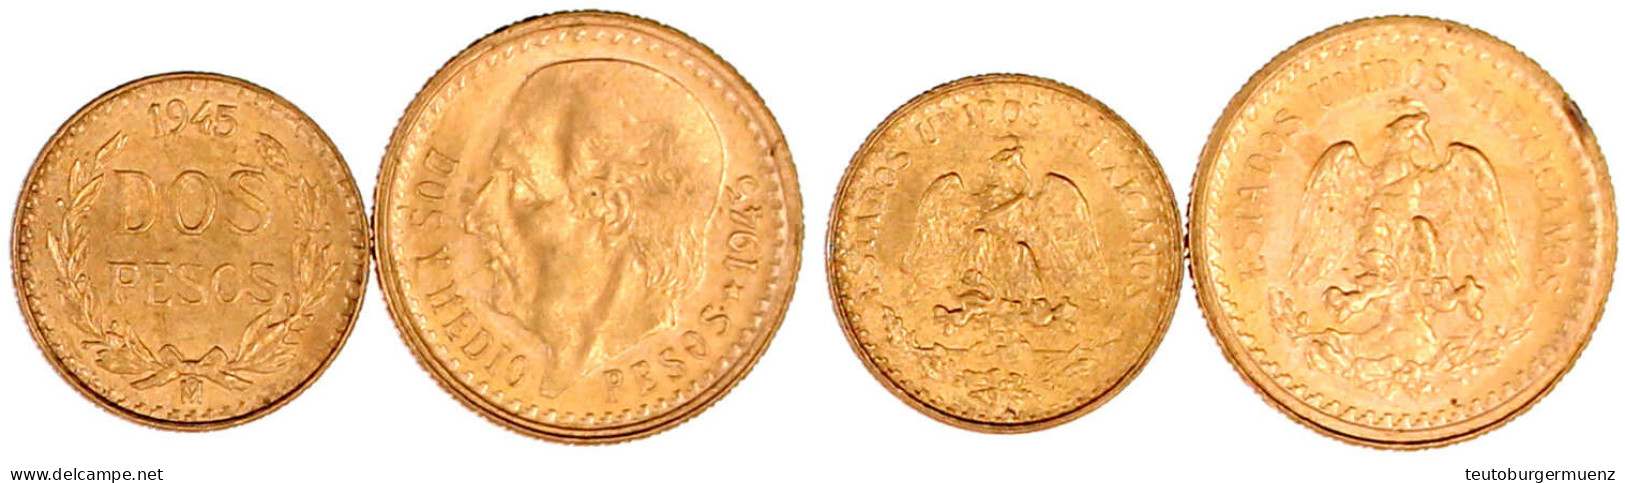 2 Stück: 2 Und 2 1/2 Pesos 1945. 1,66 G. Und 2.08 G. 900/1000. Vorzüglich/Stempelglanz. Krause/Mishler 461, 463. - Mexiko